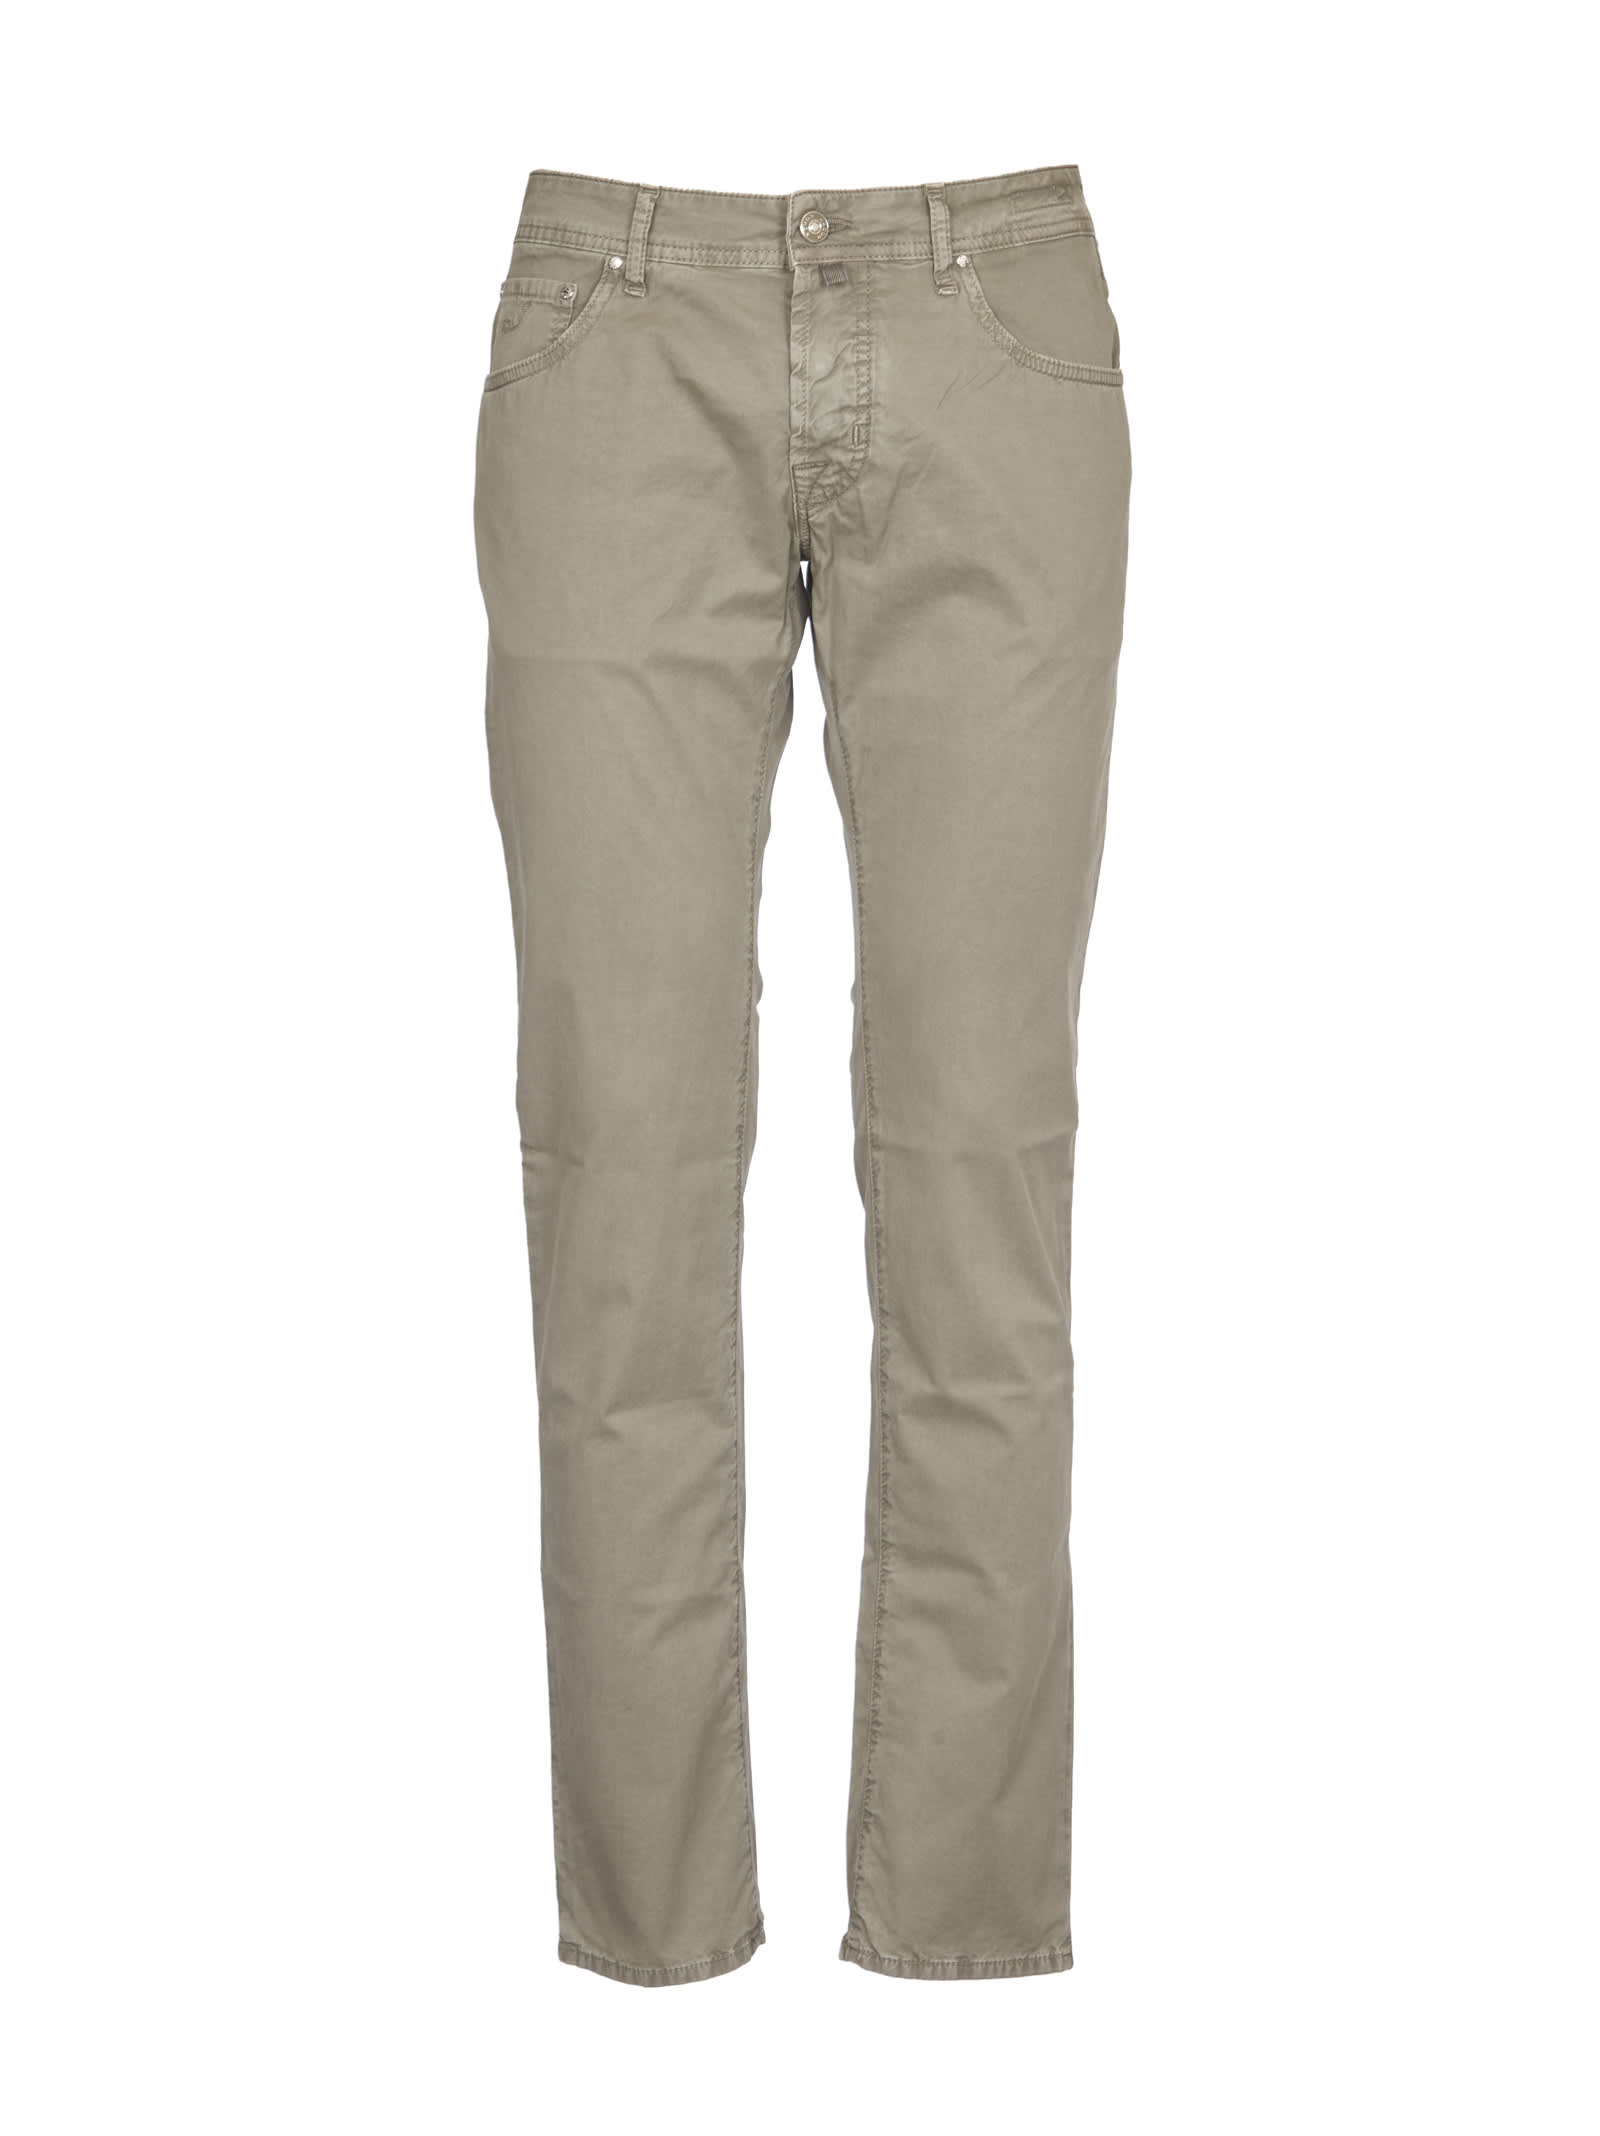 Jacob Cohen Grey Cotton Trousers